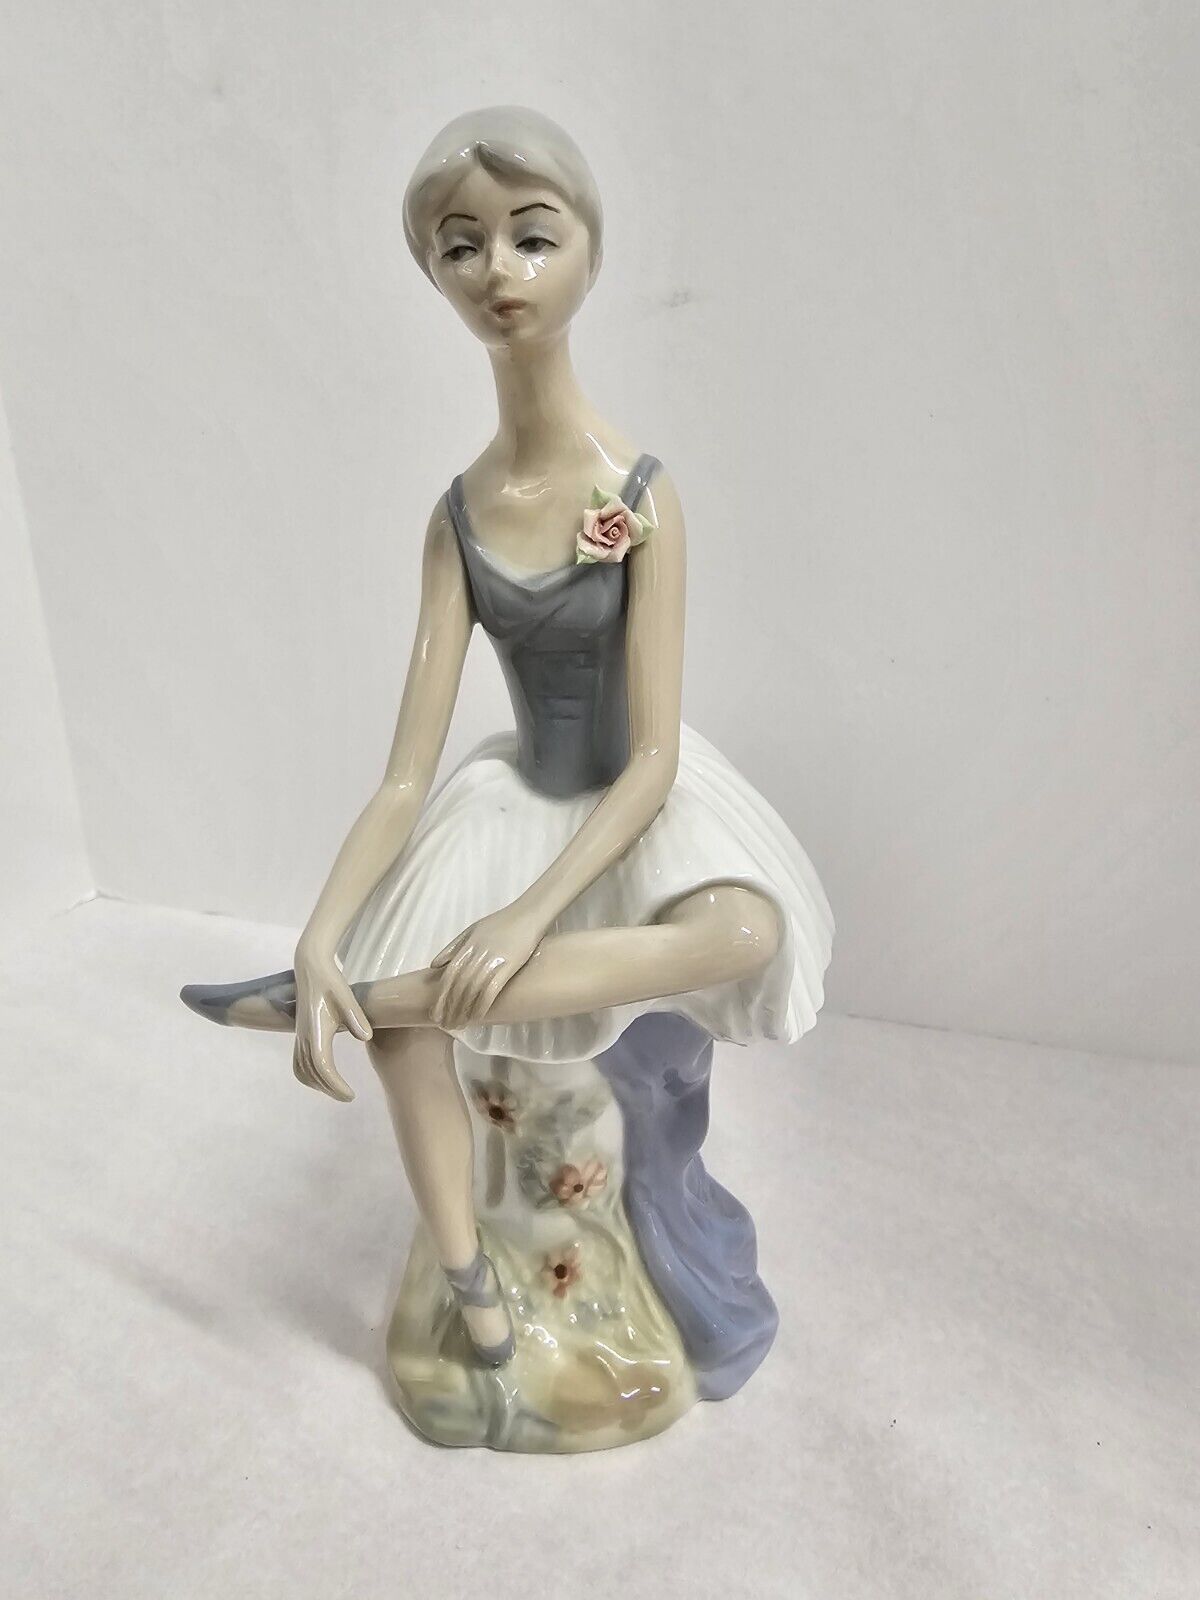 CasAdes SA Toe Dancer Ballerina Porcelanas Figurine Statue Made in Spain Vintage